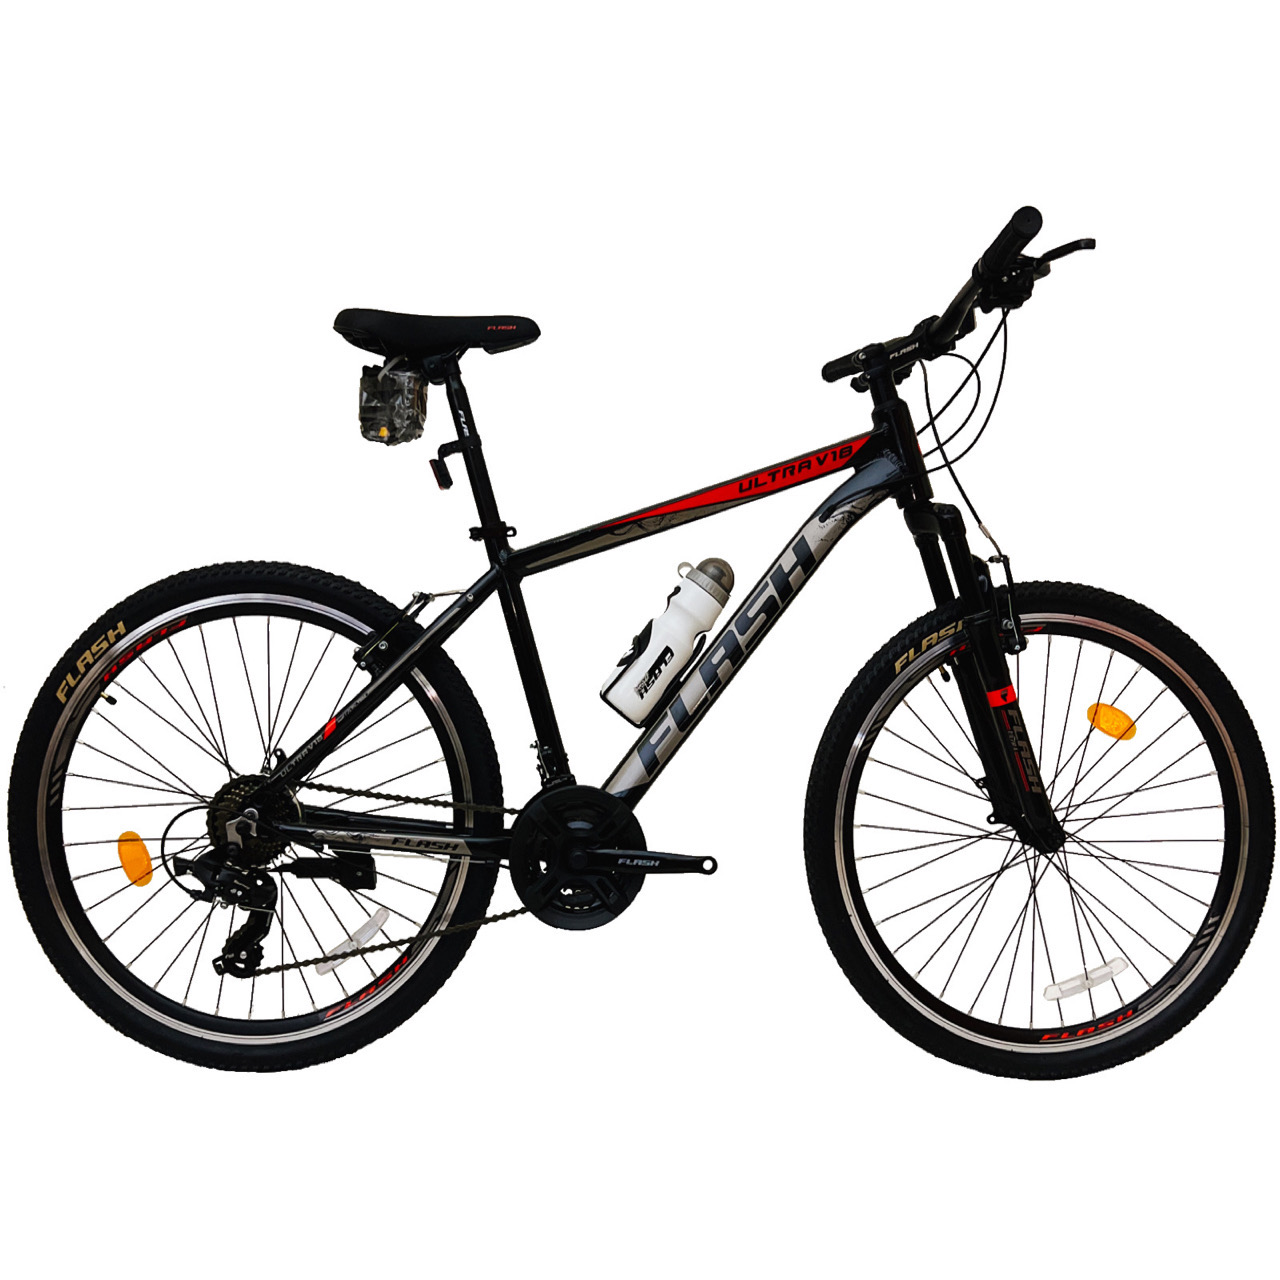 نکته خرید - قیمت روز دوچرخه کوهستان فلش مدل ULTRA V18 سایز 26 خرید